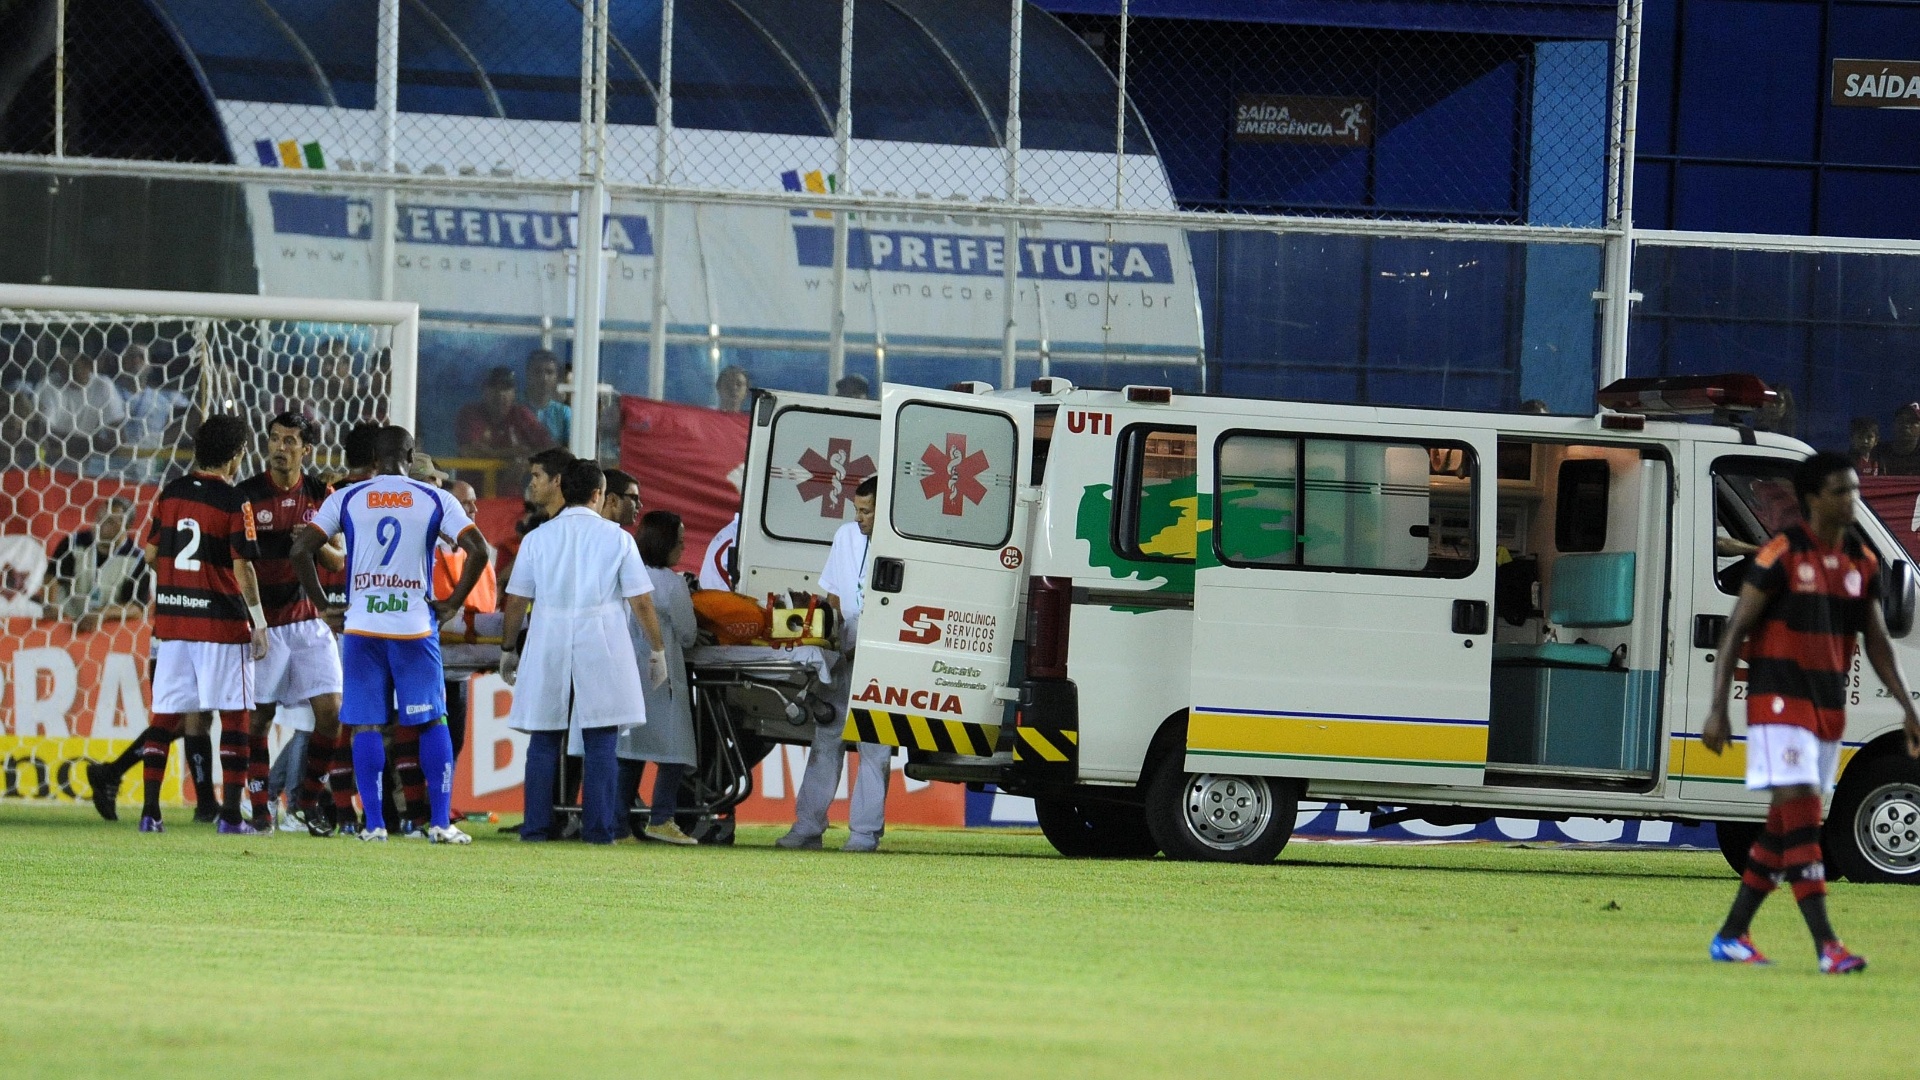 04.mar.2012 - Goleiro Felipe é levado de ambulância para o hospital depois de choque em partida do Flamengo contra o Duque de Caxias